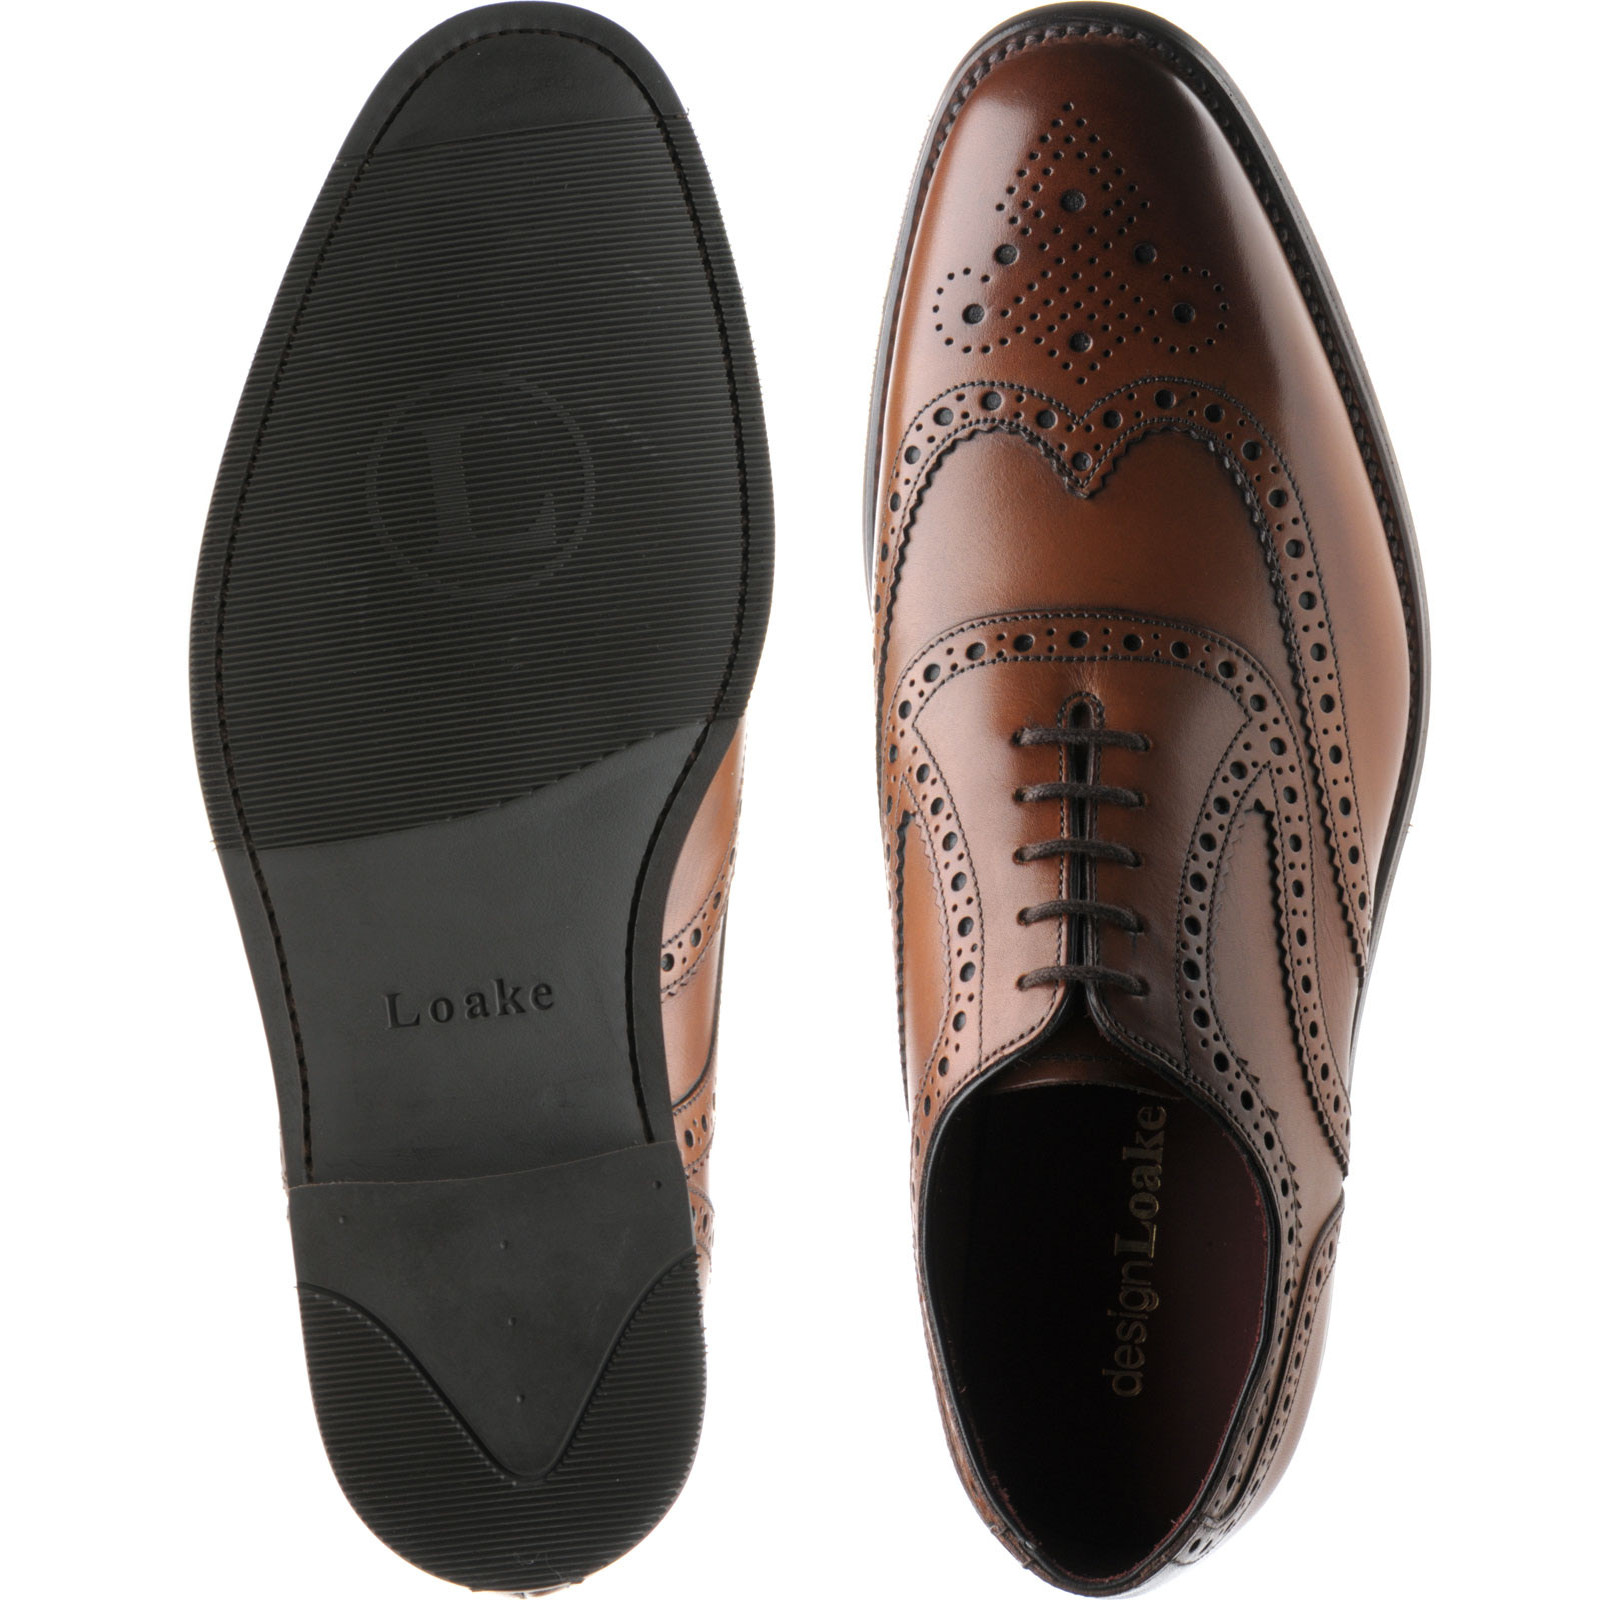 Loake shoes | Loake Design | Kerridge in Cedar Calf at Herring Shoes